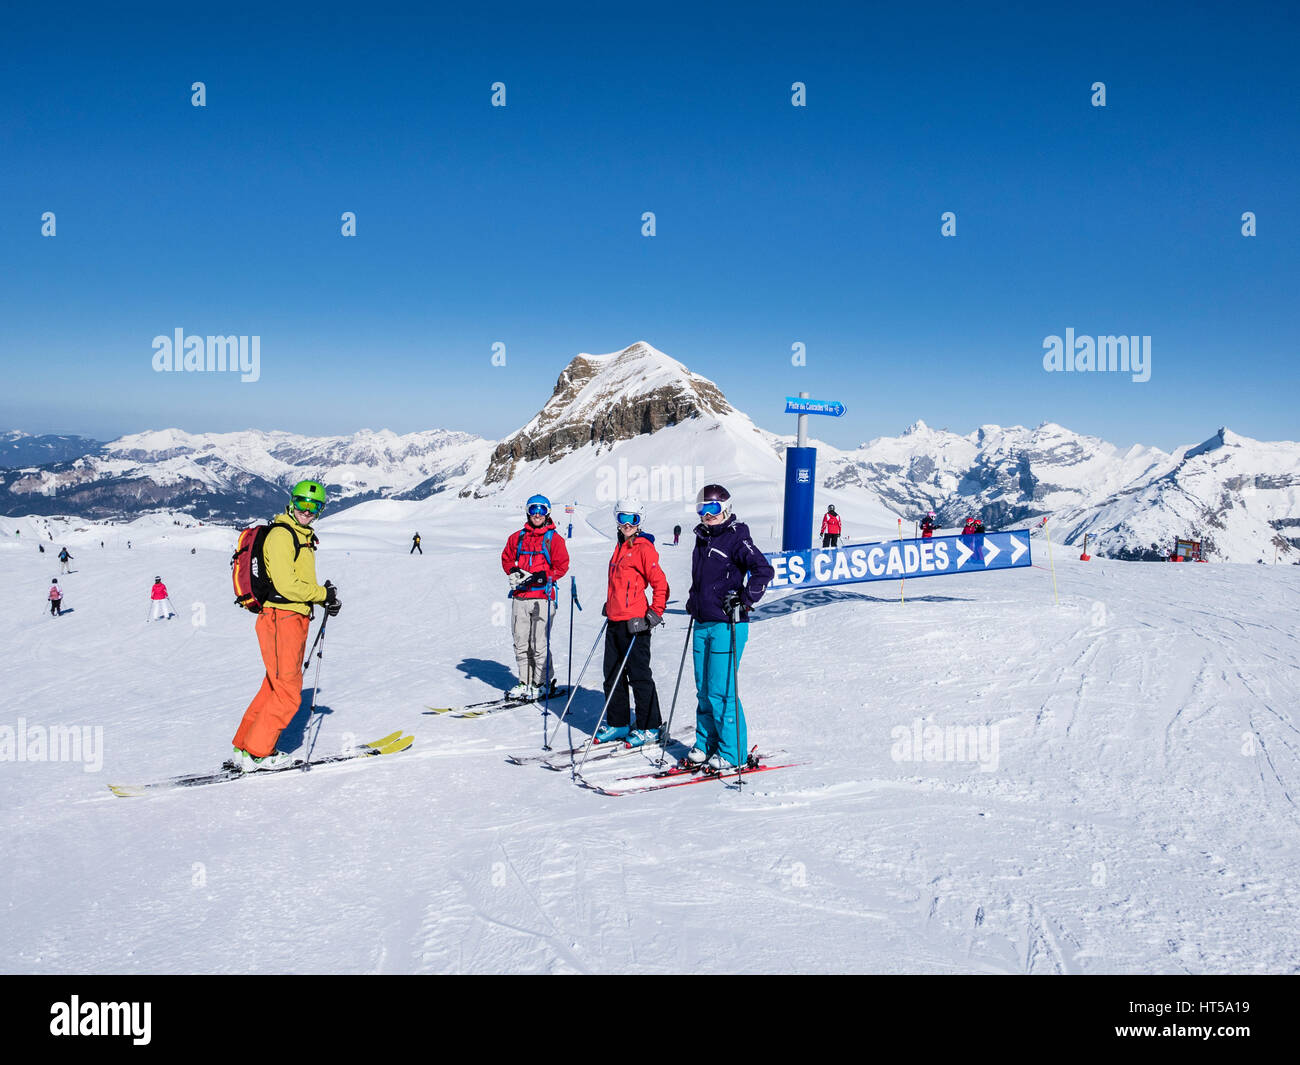 Vier Skifahrer von Piste des Cascades melden Sie sich beim Skifahren auf Schnee Piste hoch in die Berge der französischen Alpen. Flaine, Haute Savoie Rhone-Alpes, Frankreich Stockfoto